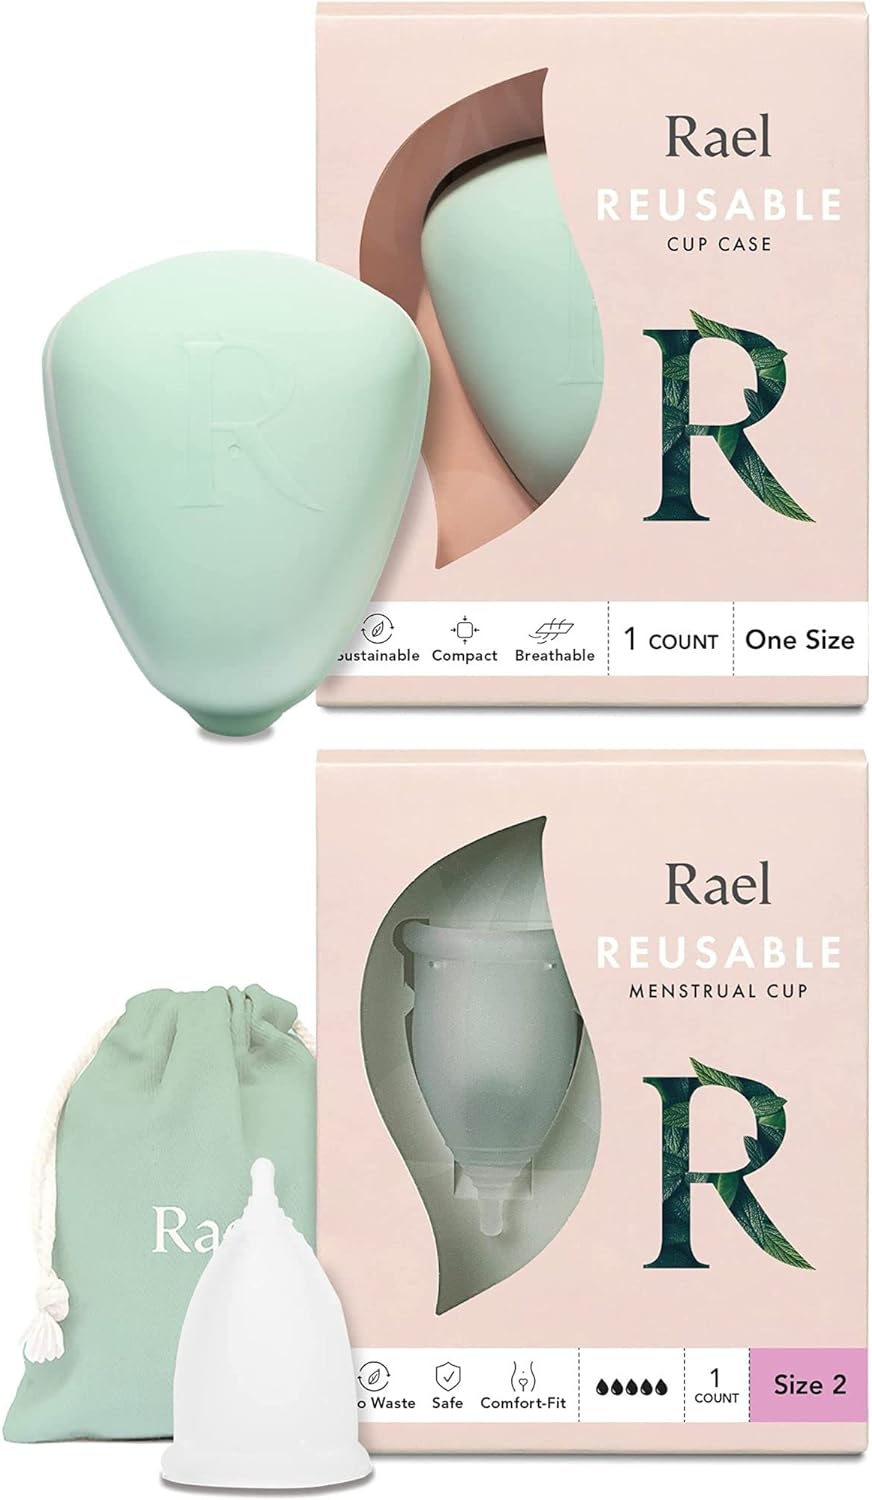 Rael Reusable Bundle - Reusable Menstrual Cup Case (One Size) & Reusable Cup for Heavy Flow (Size 2)